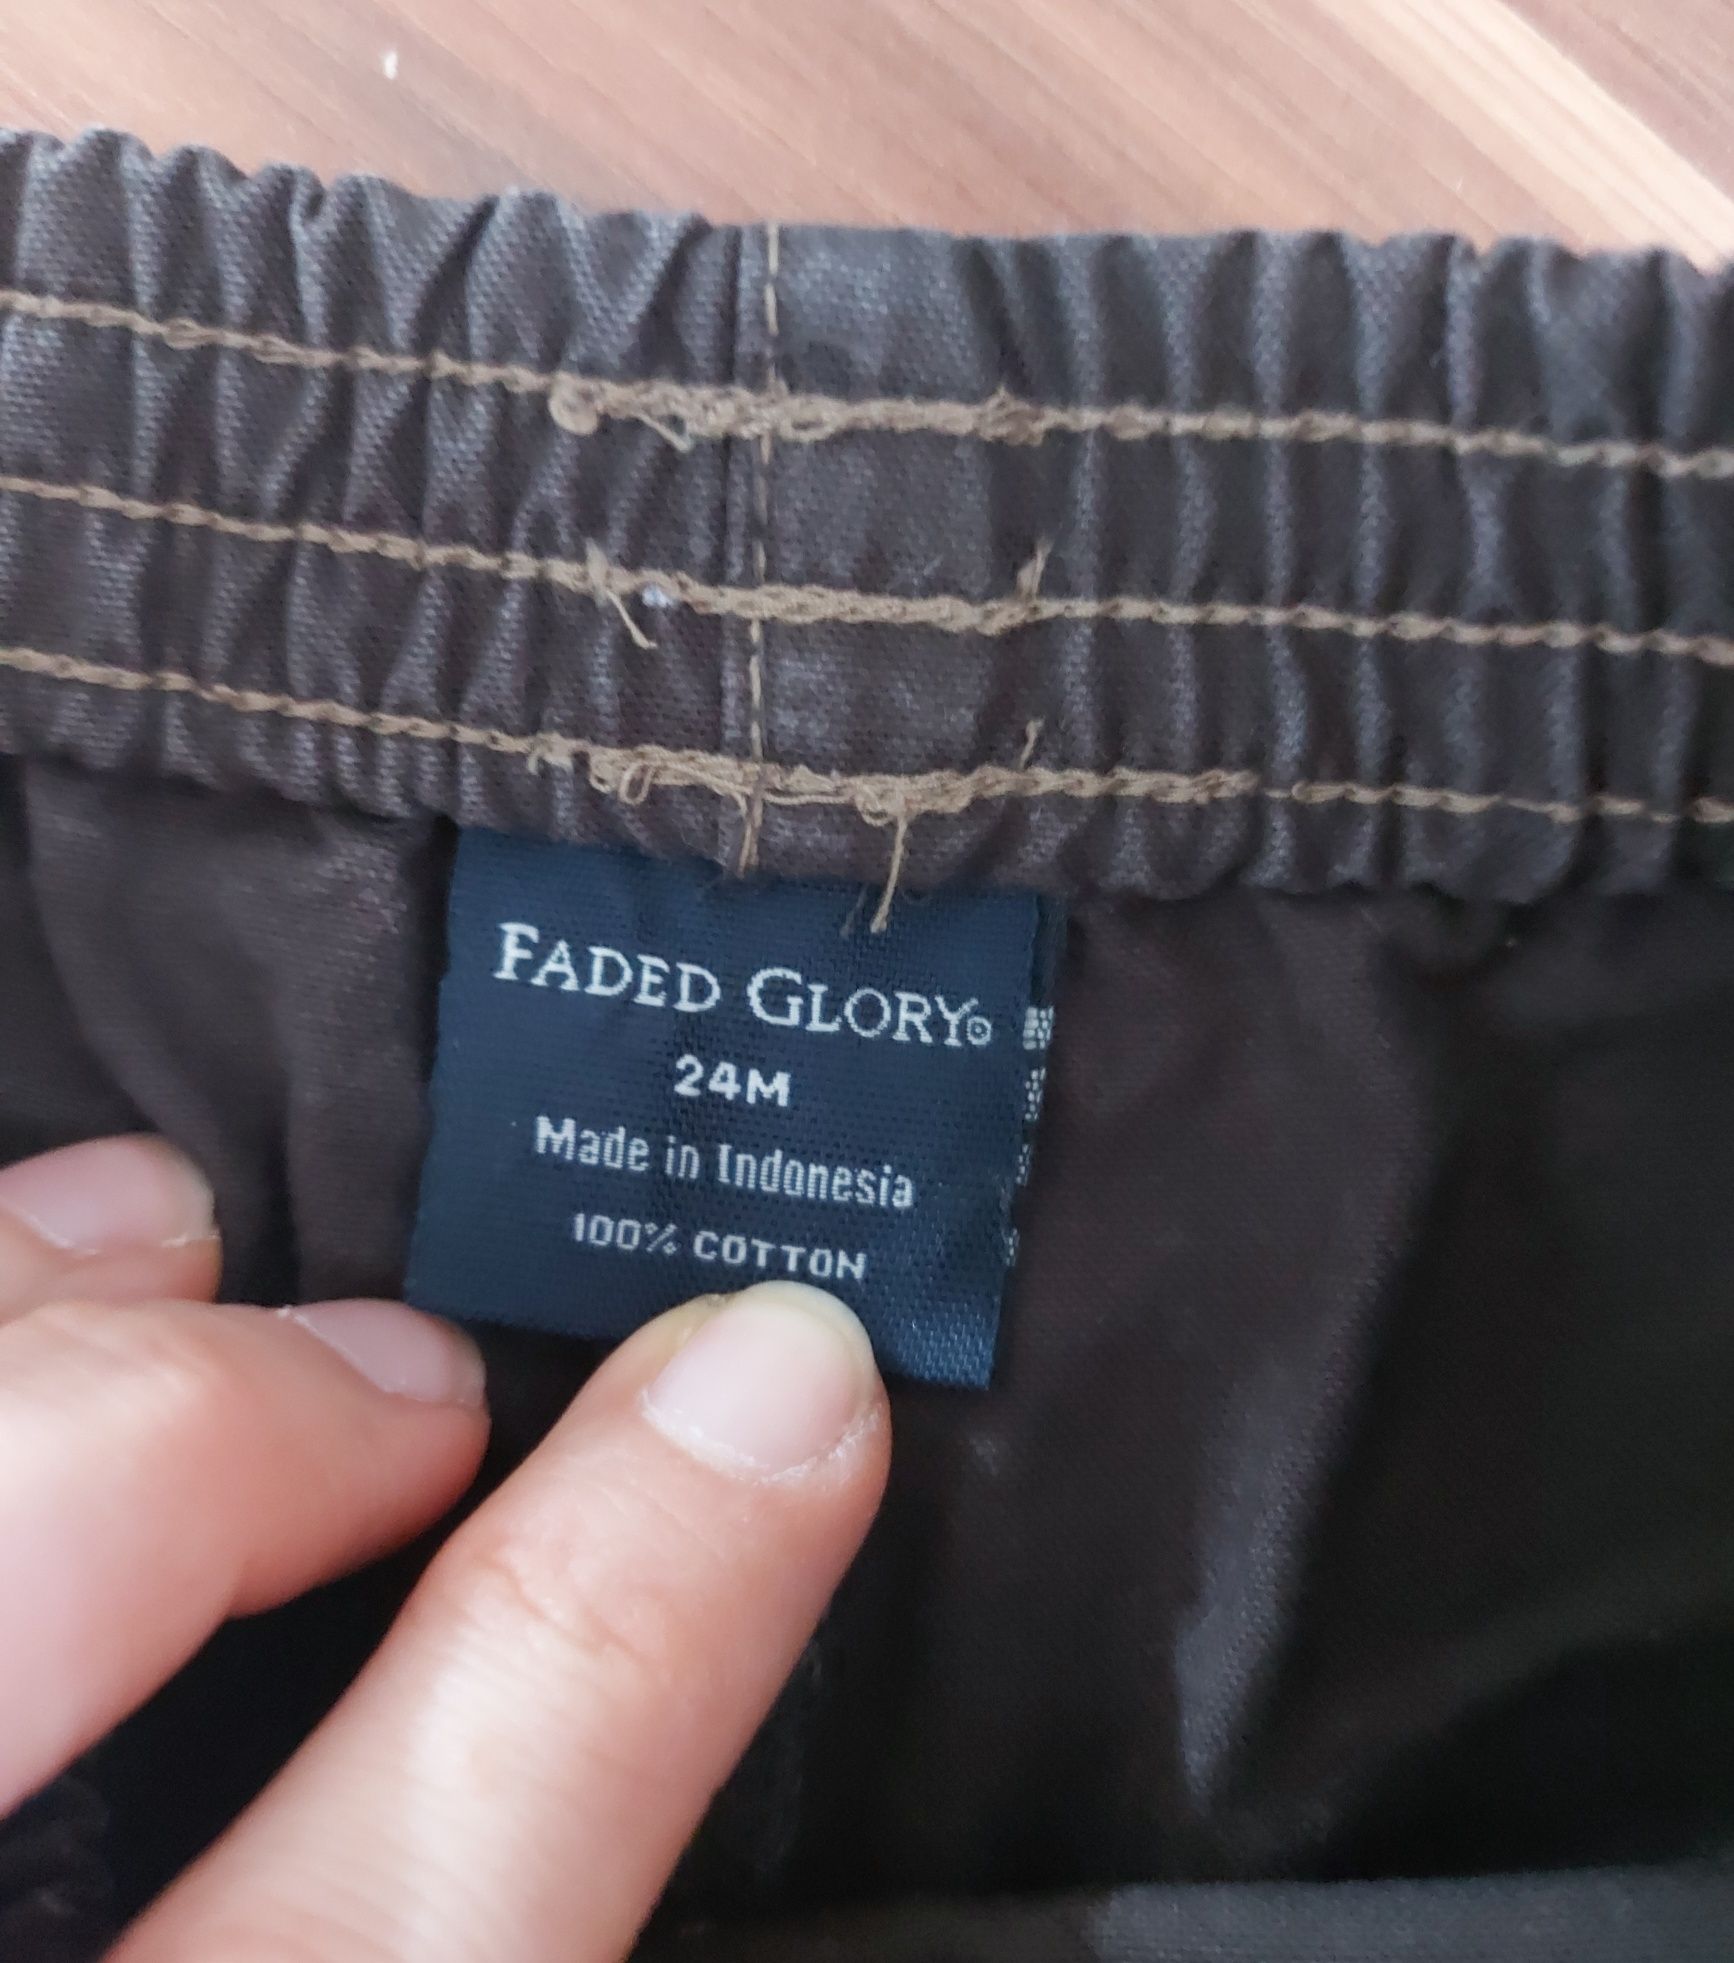 Faded glory spodnie dla chlopca 92